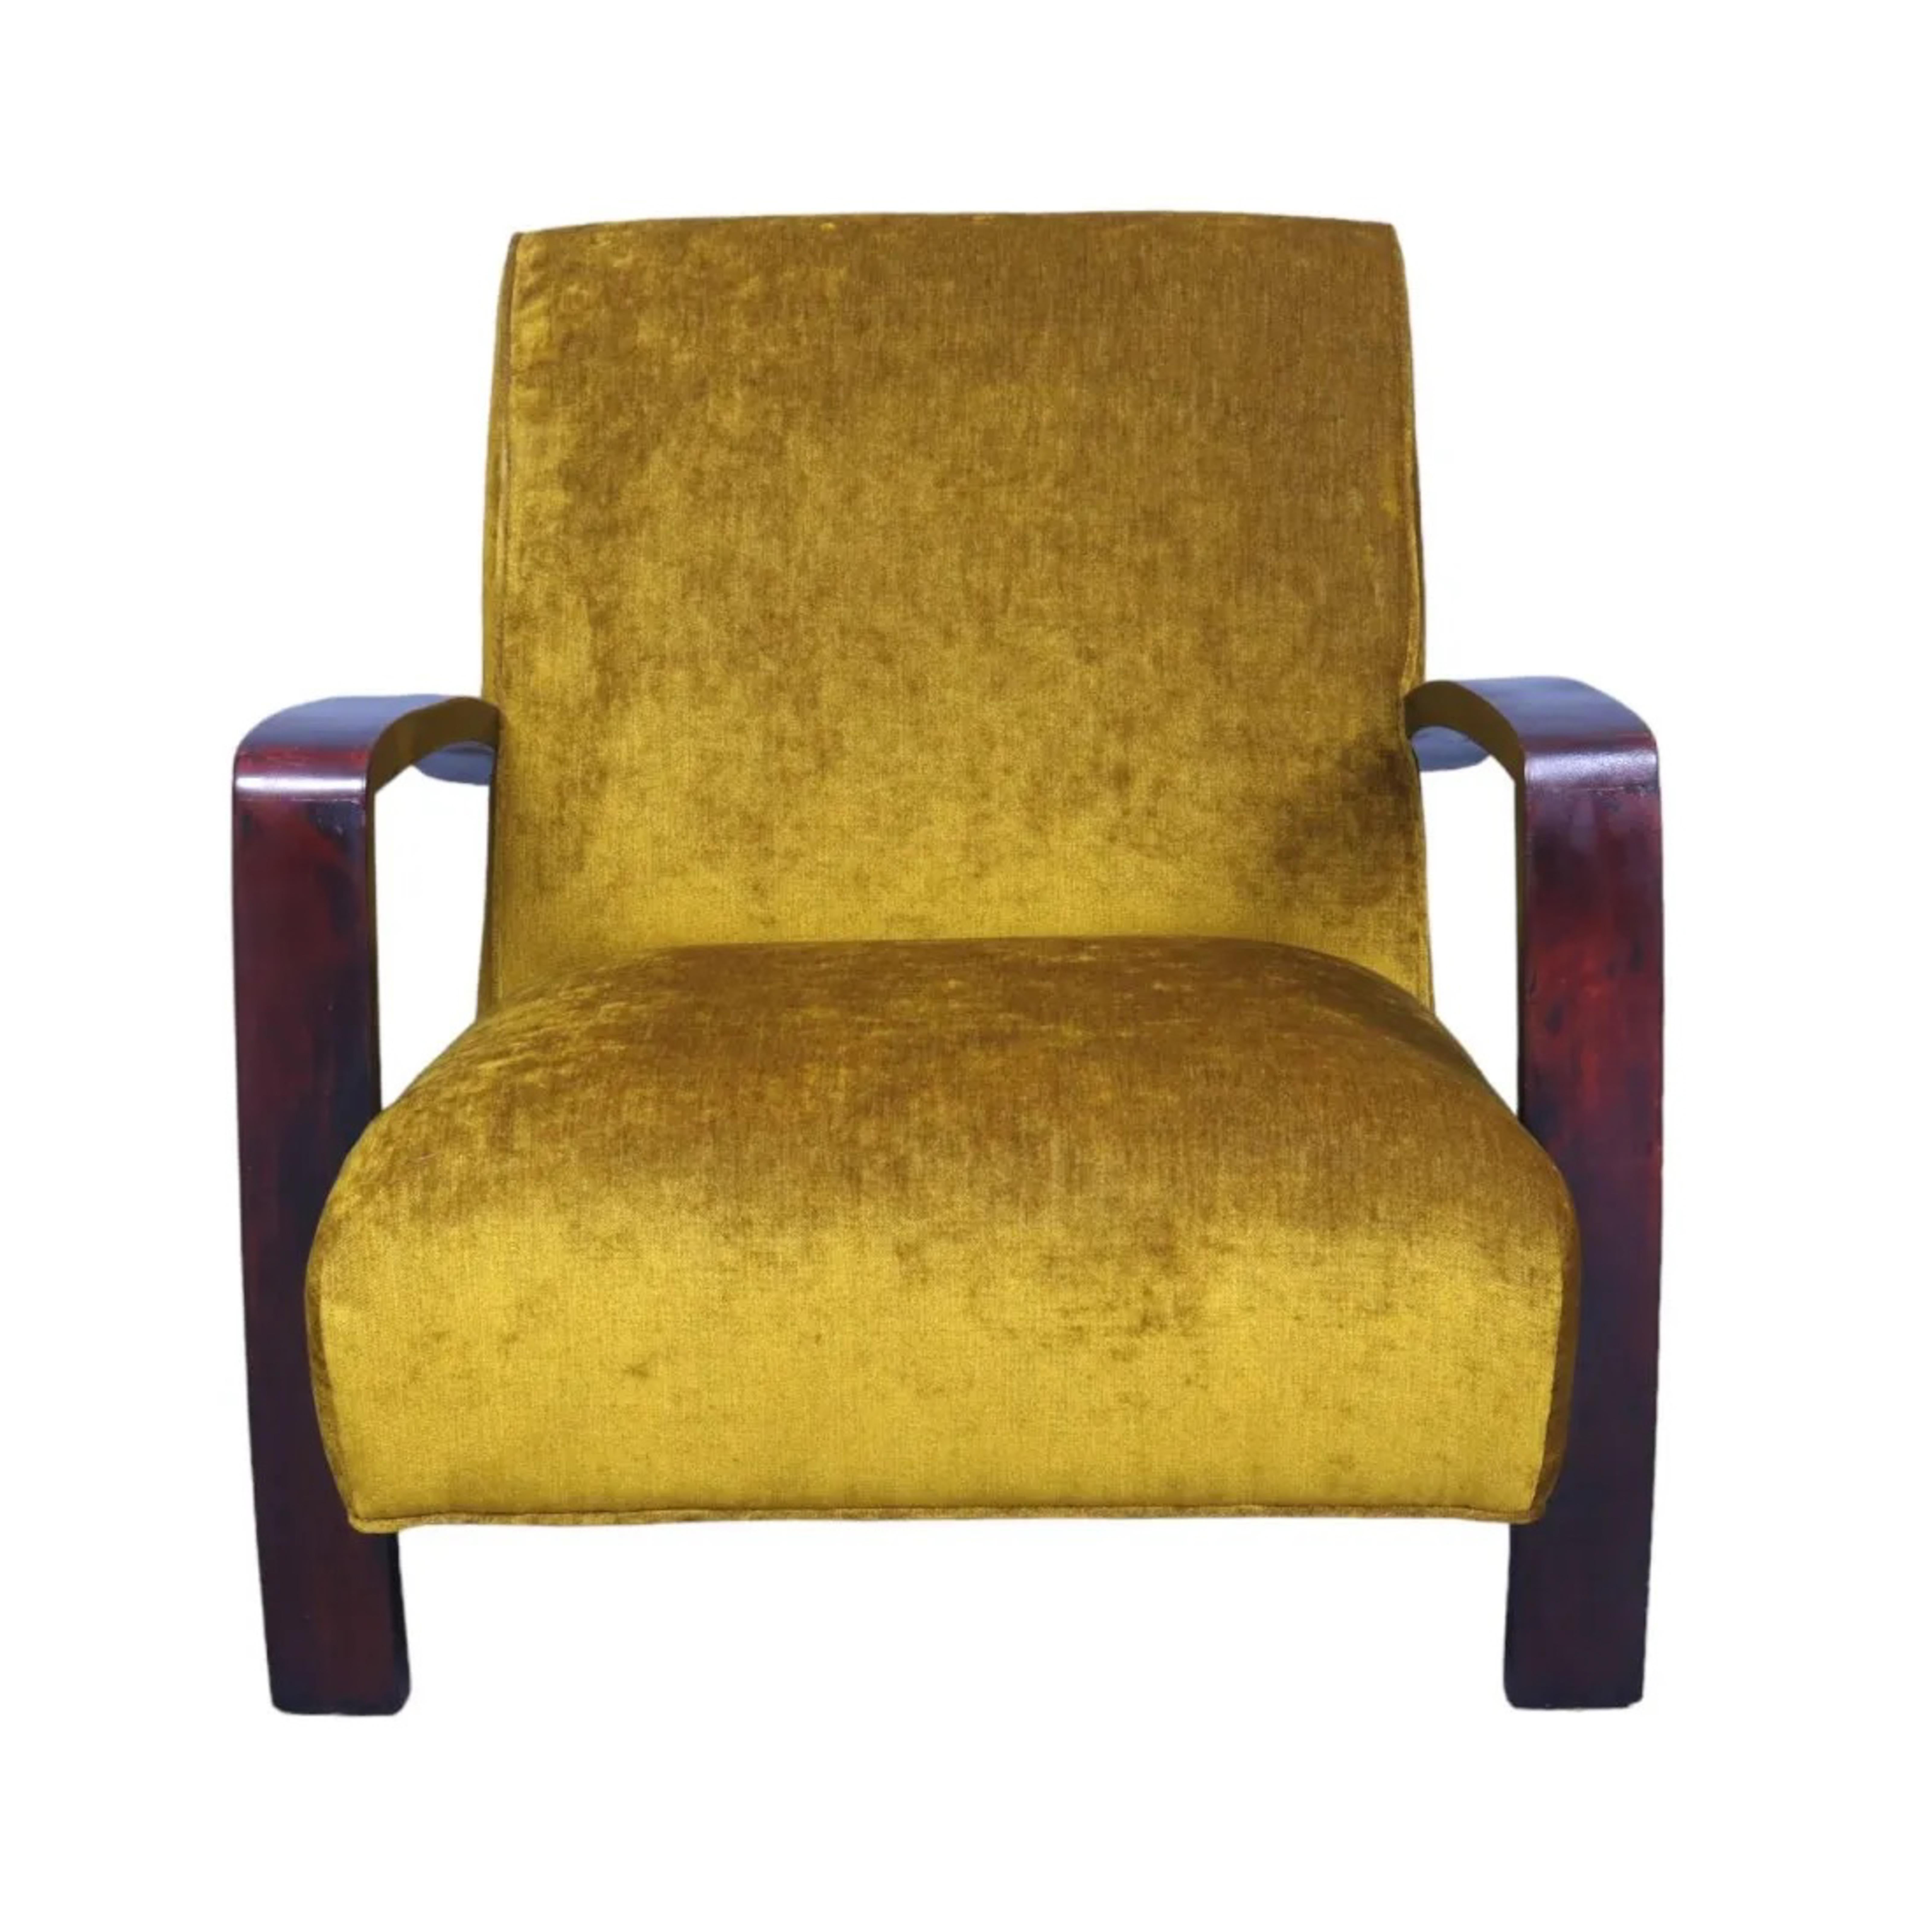 Chaise longue suédoise du milieu du siècle, 1960

Dimensions :
L27xP27XH34 pouces
Hauteur de l'assise 17in
Hauteur d'accoudoir 24in

Condit :
très bon entièrement restauré
nouvelle tapisserie d'ameublement 